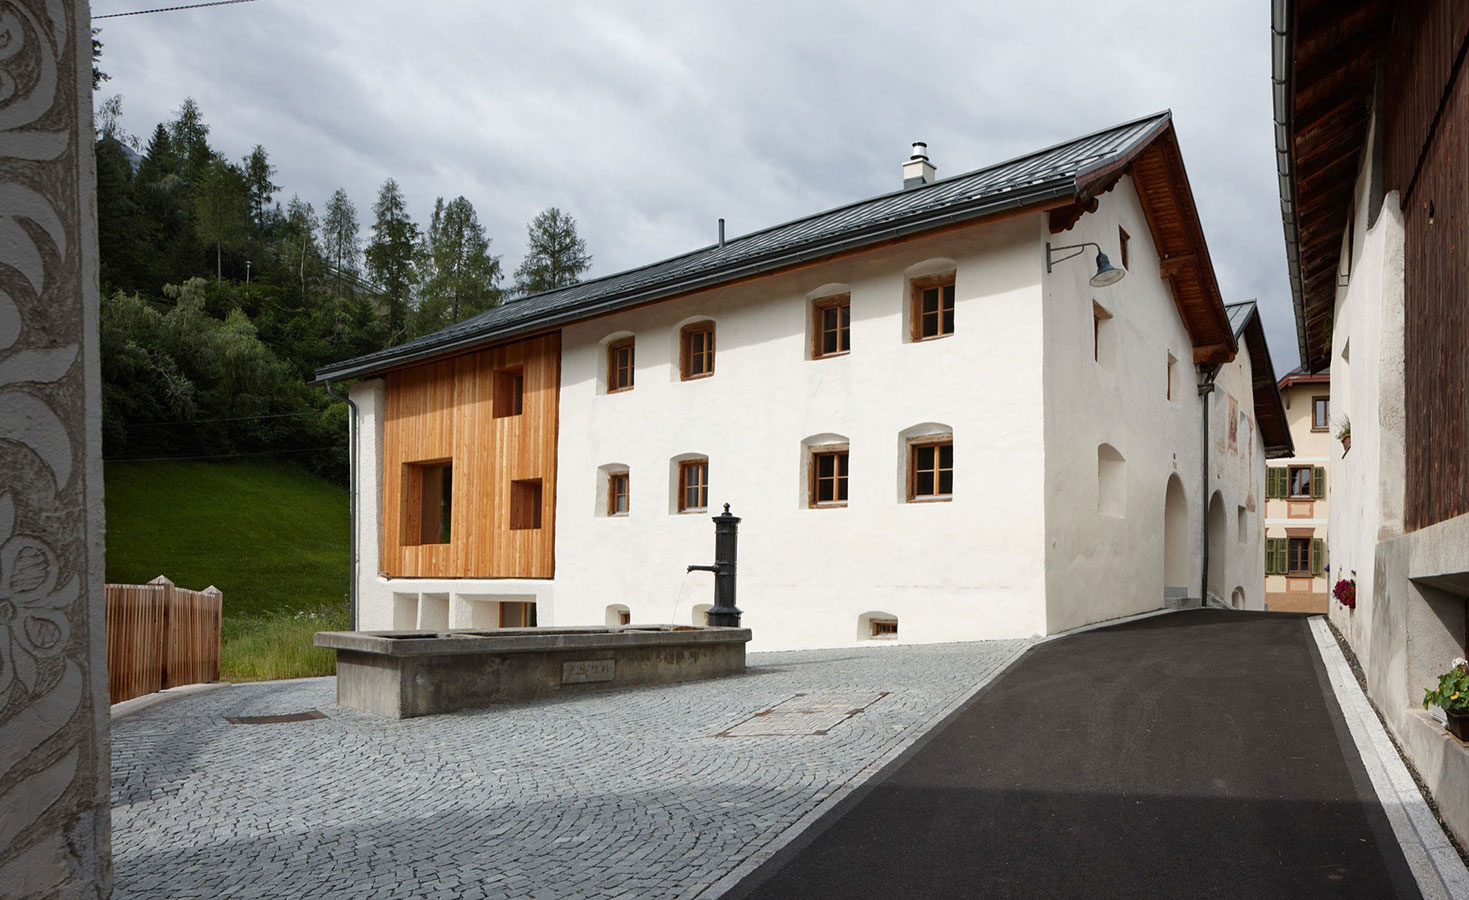 Nádherná rekonštrukcia starého domu rešpektujúca lokálny kolorit horskej dediny